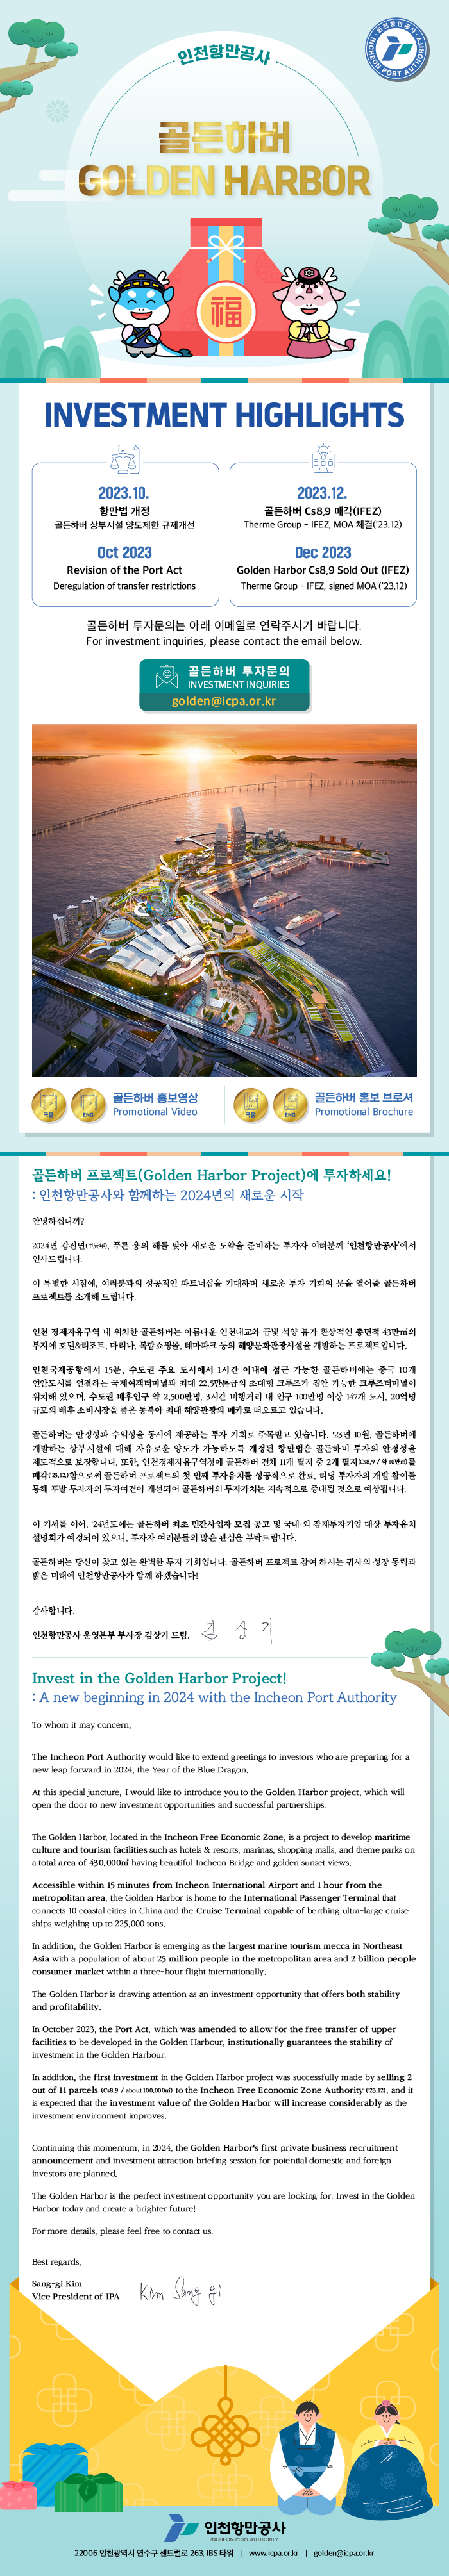 골든하버 프로젝트(Golden Harbor Project)에 투자하세요! 자세한 내용은 아래 참조